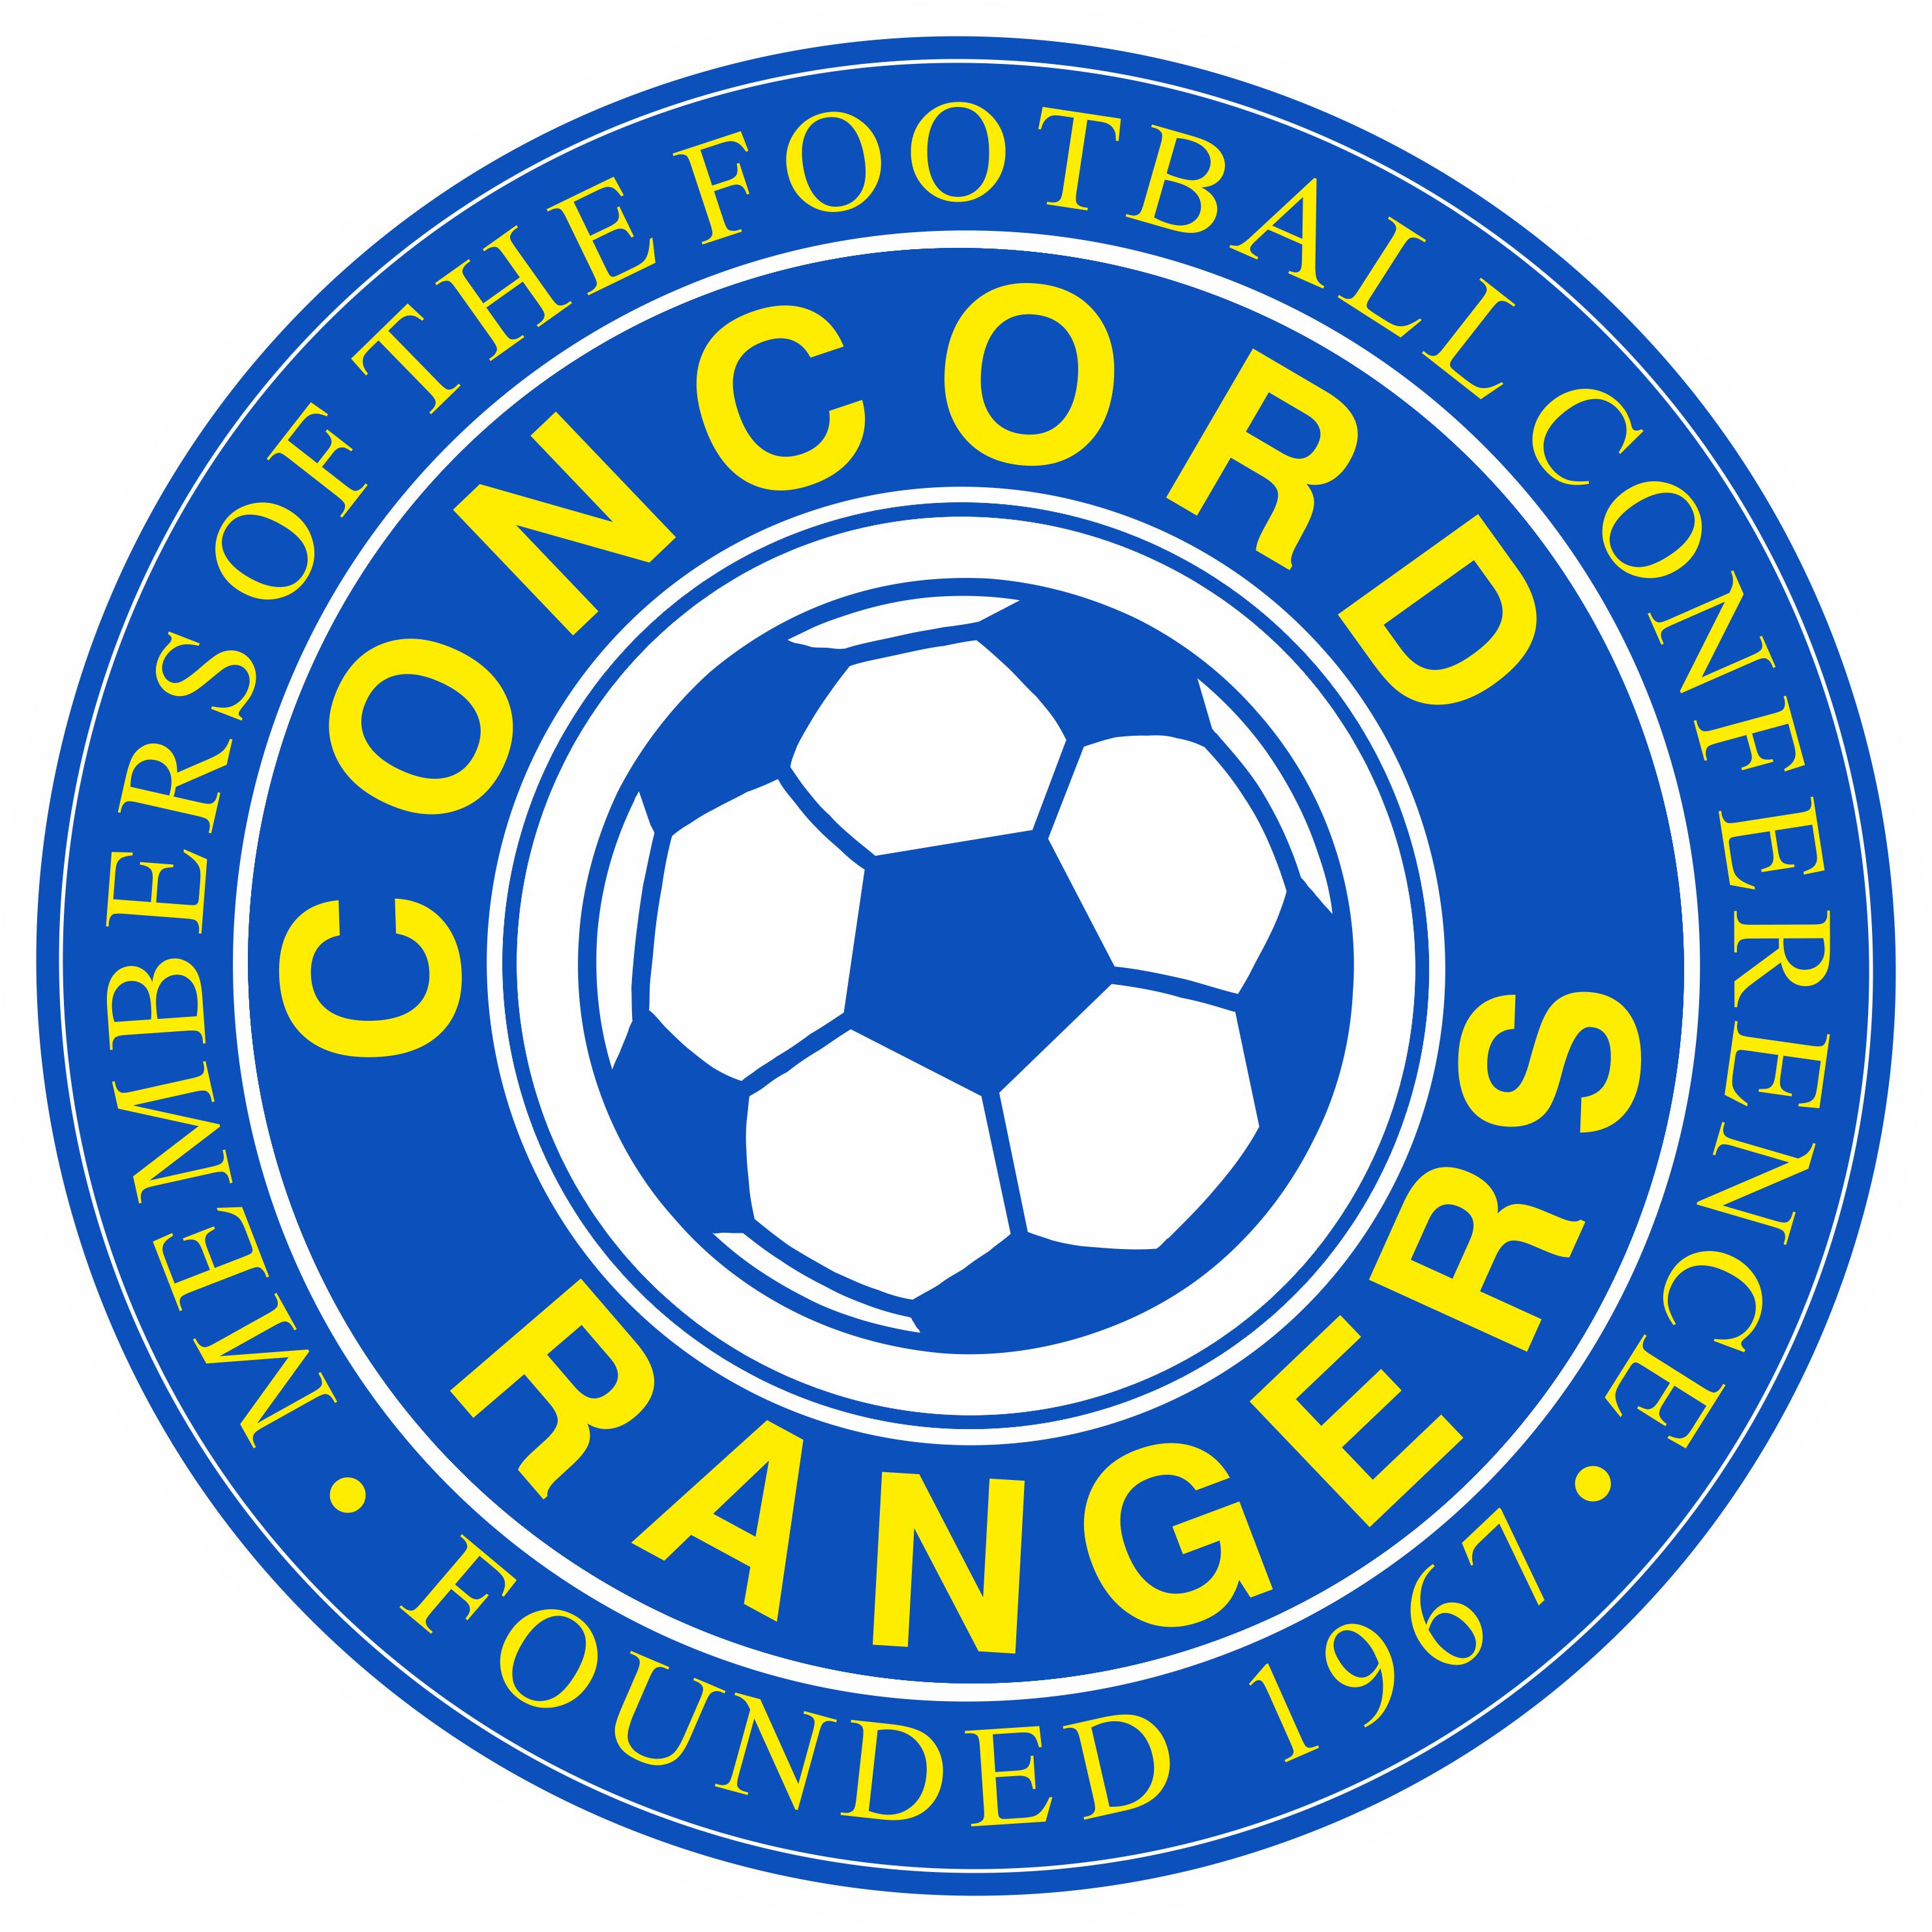 Concord Rangers New Badge